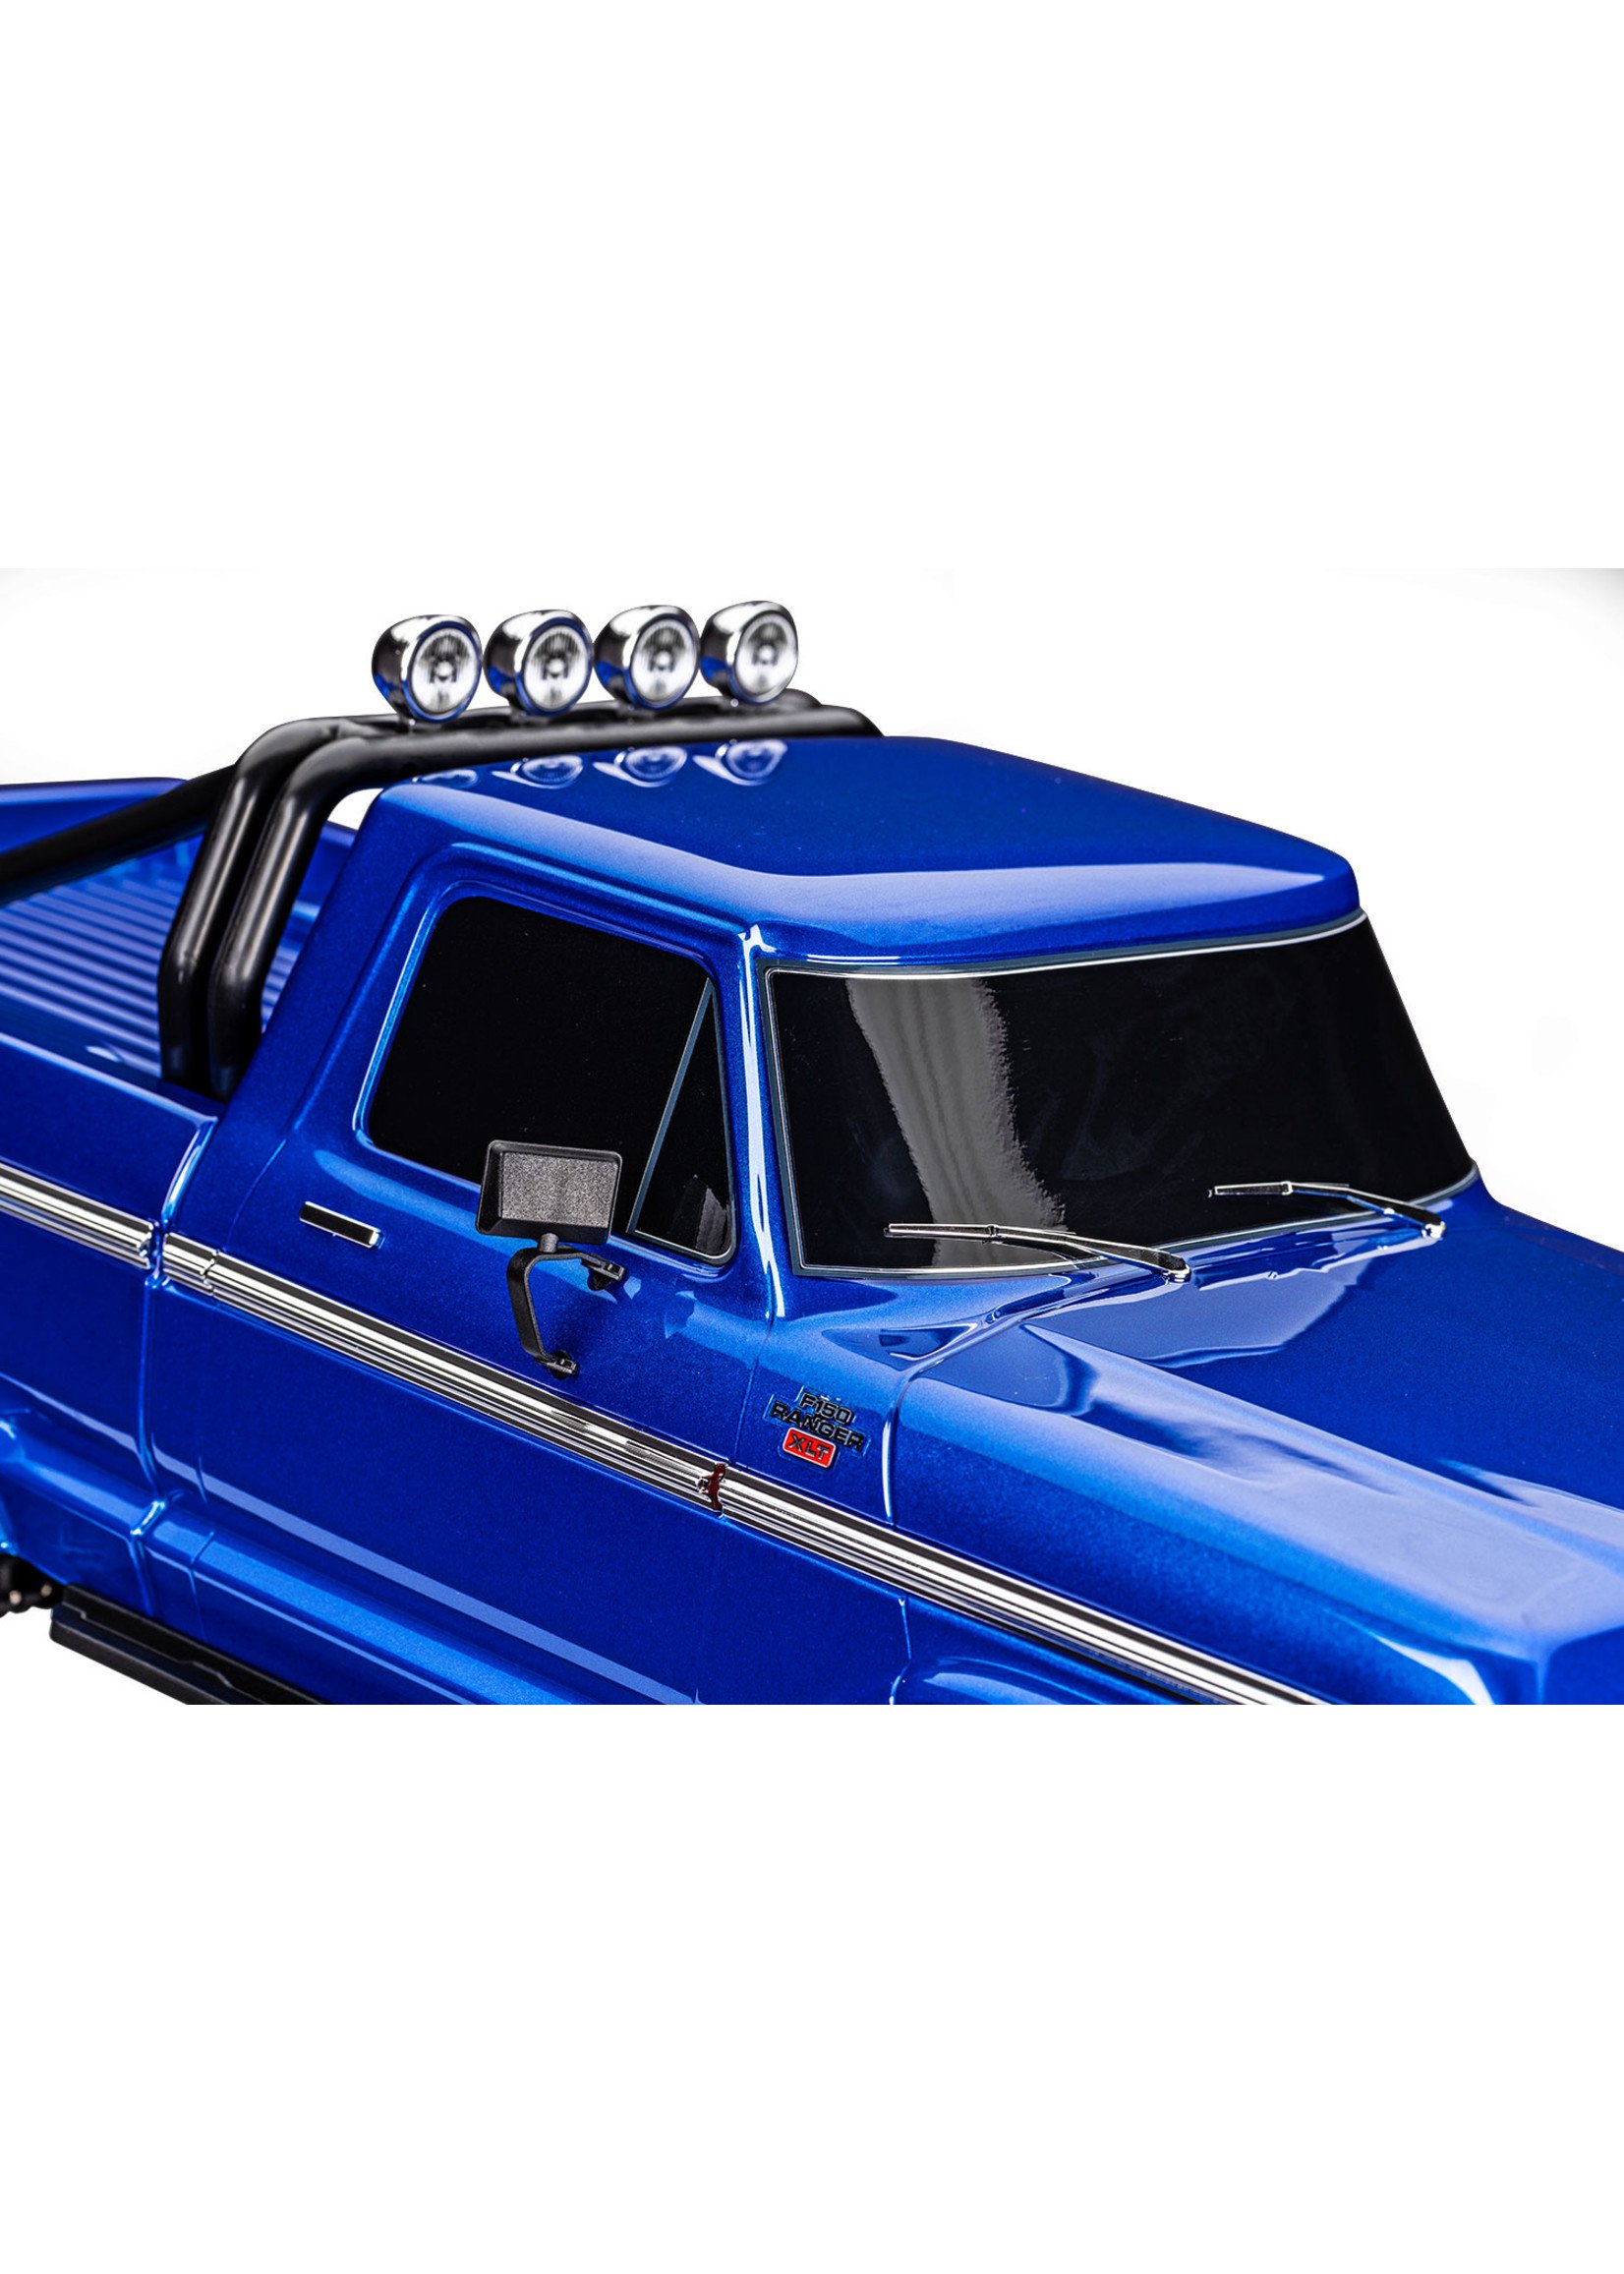 Traxxas 1/10 '79 Ford F150 Ranger, High Trail Edition - Blue